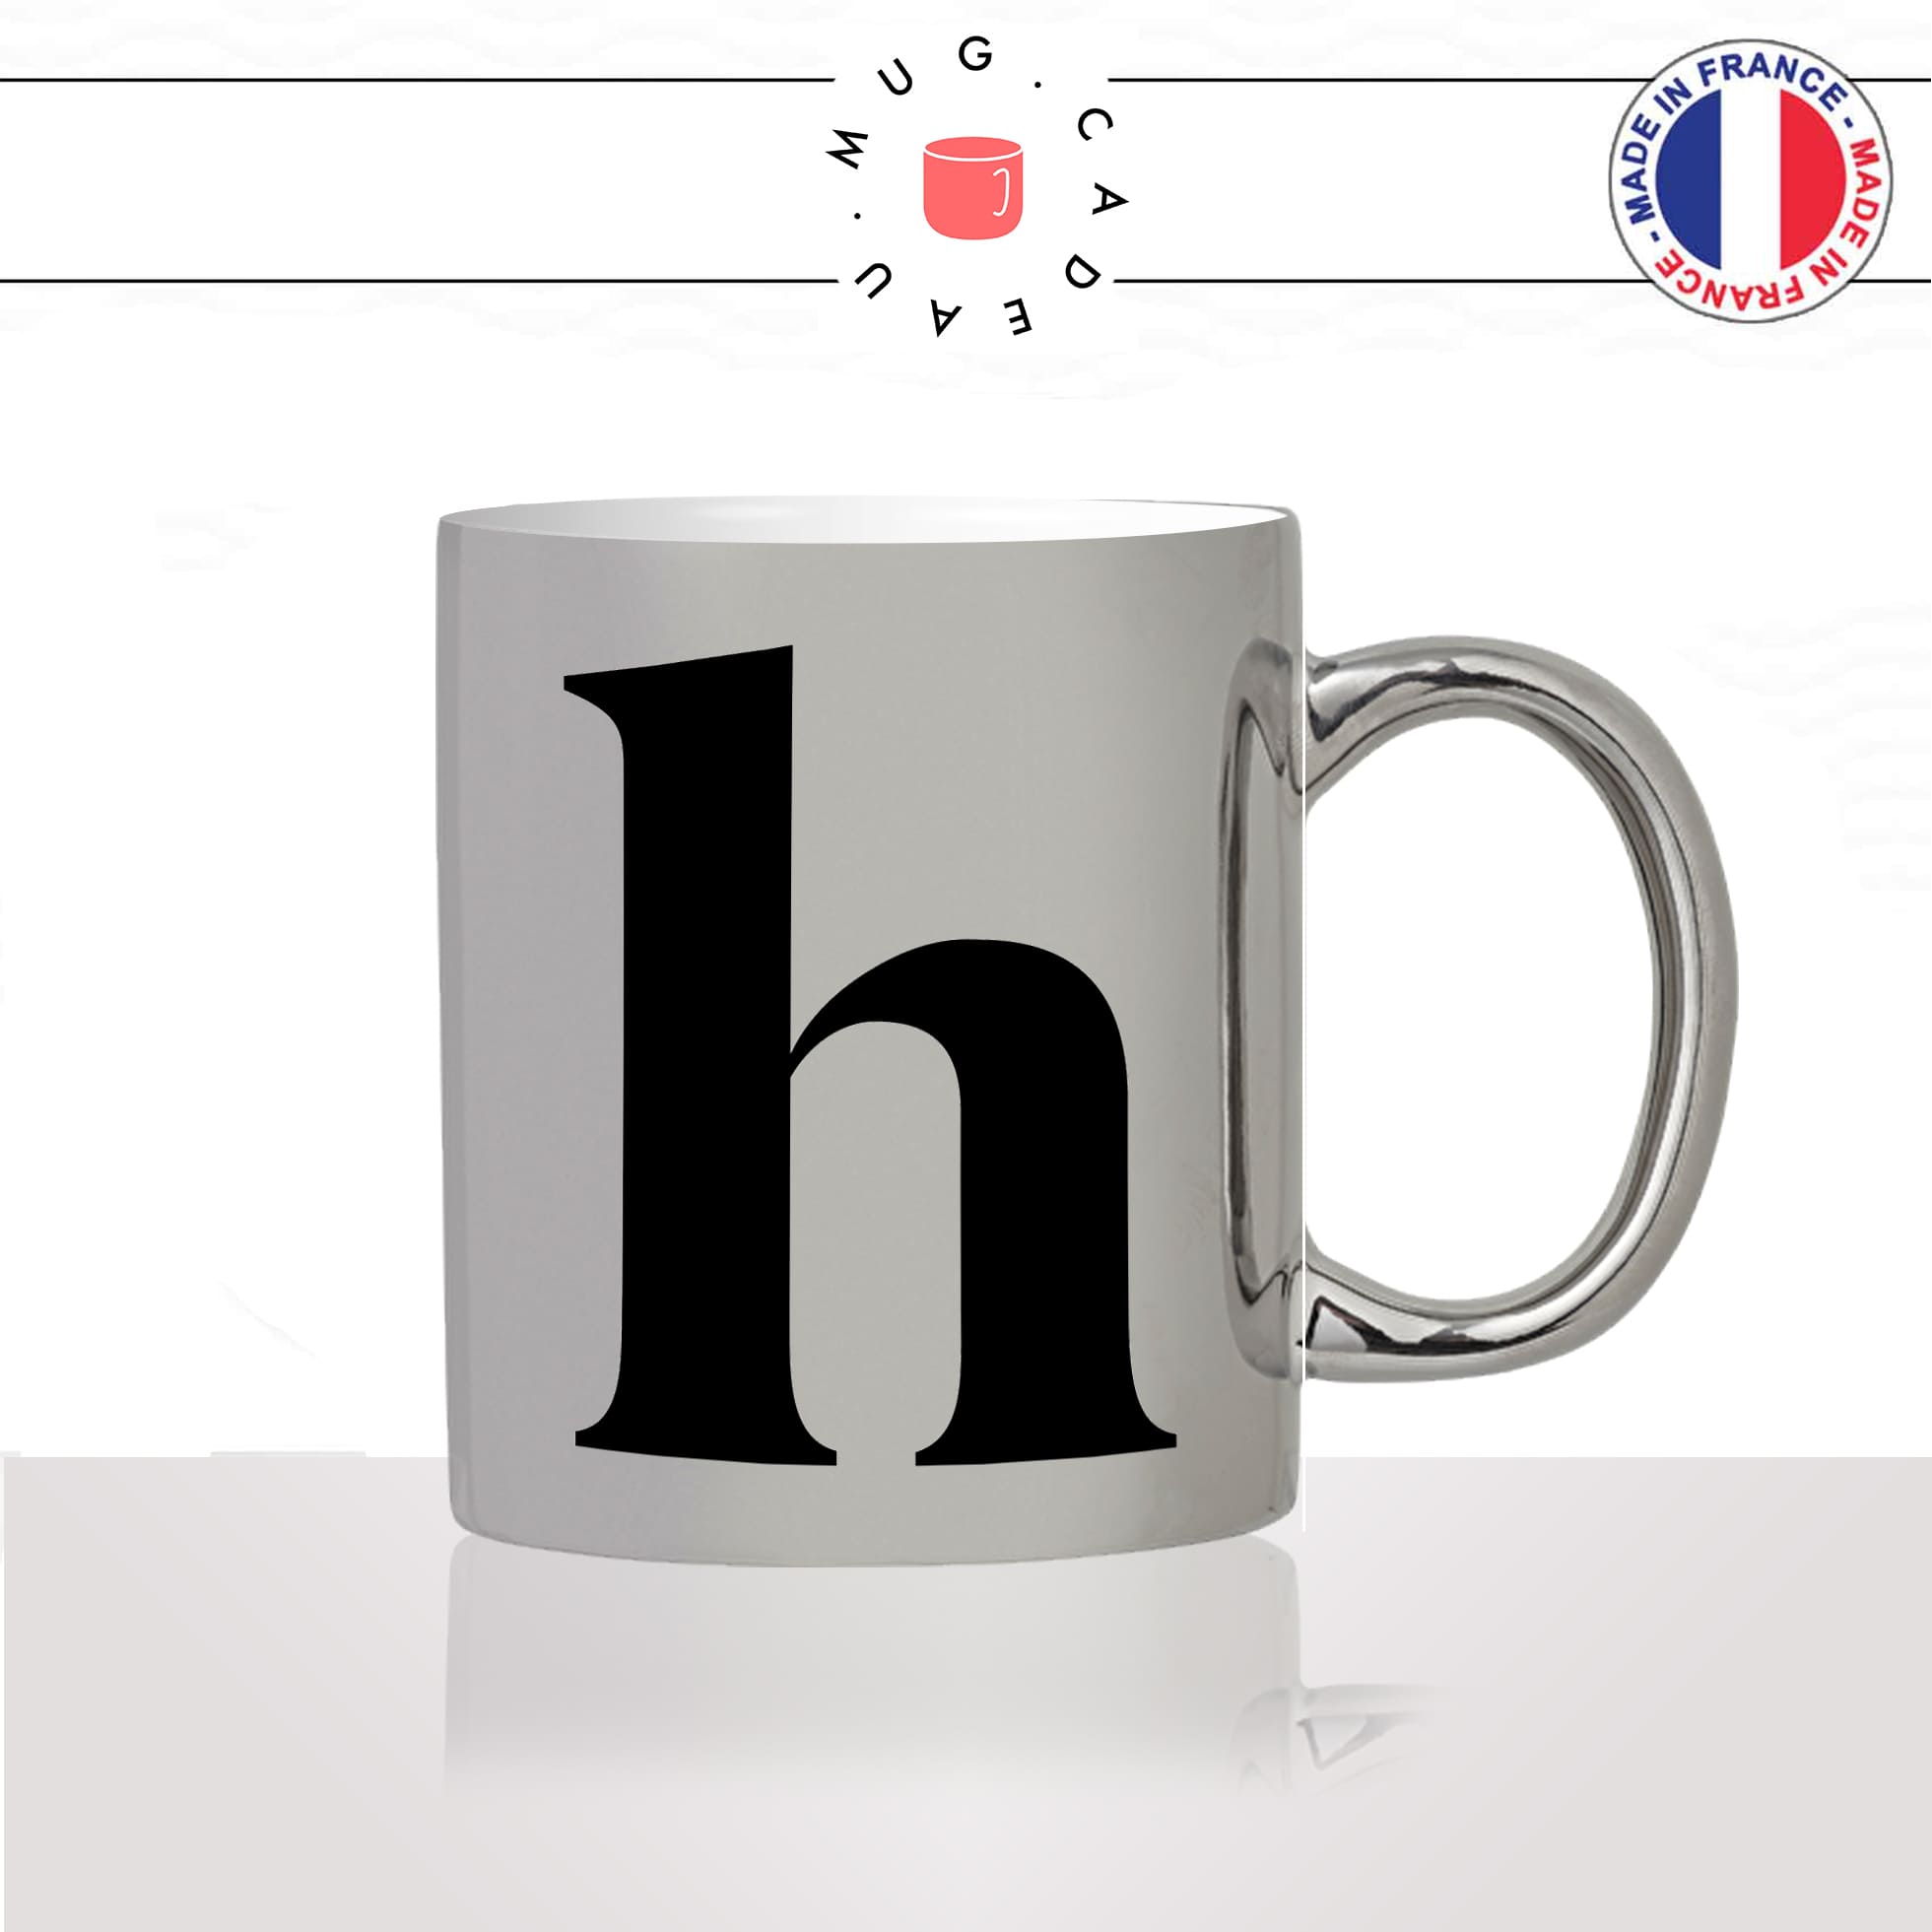 mug-tasse-argent-argenté-silver-initiale-H-harry-hector-hermione-henry-majuscule-lettre-collegue-original-idée-cadeau-fun-cool-café-thé2